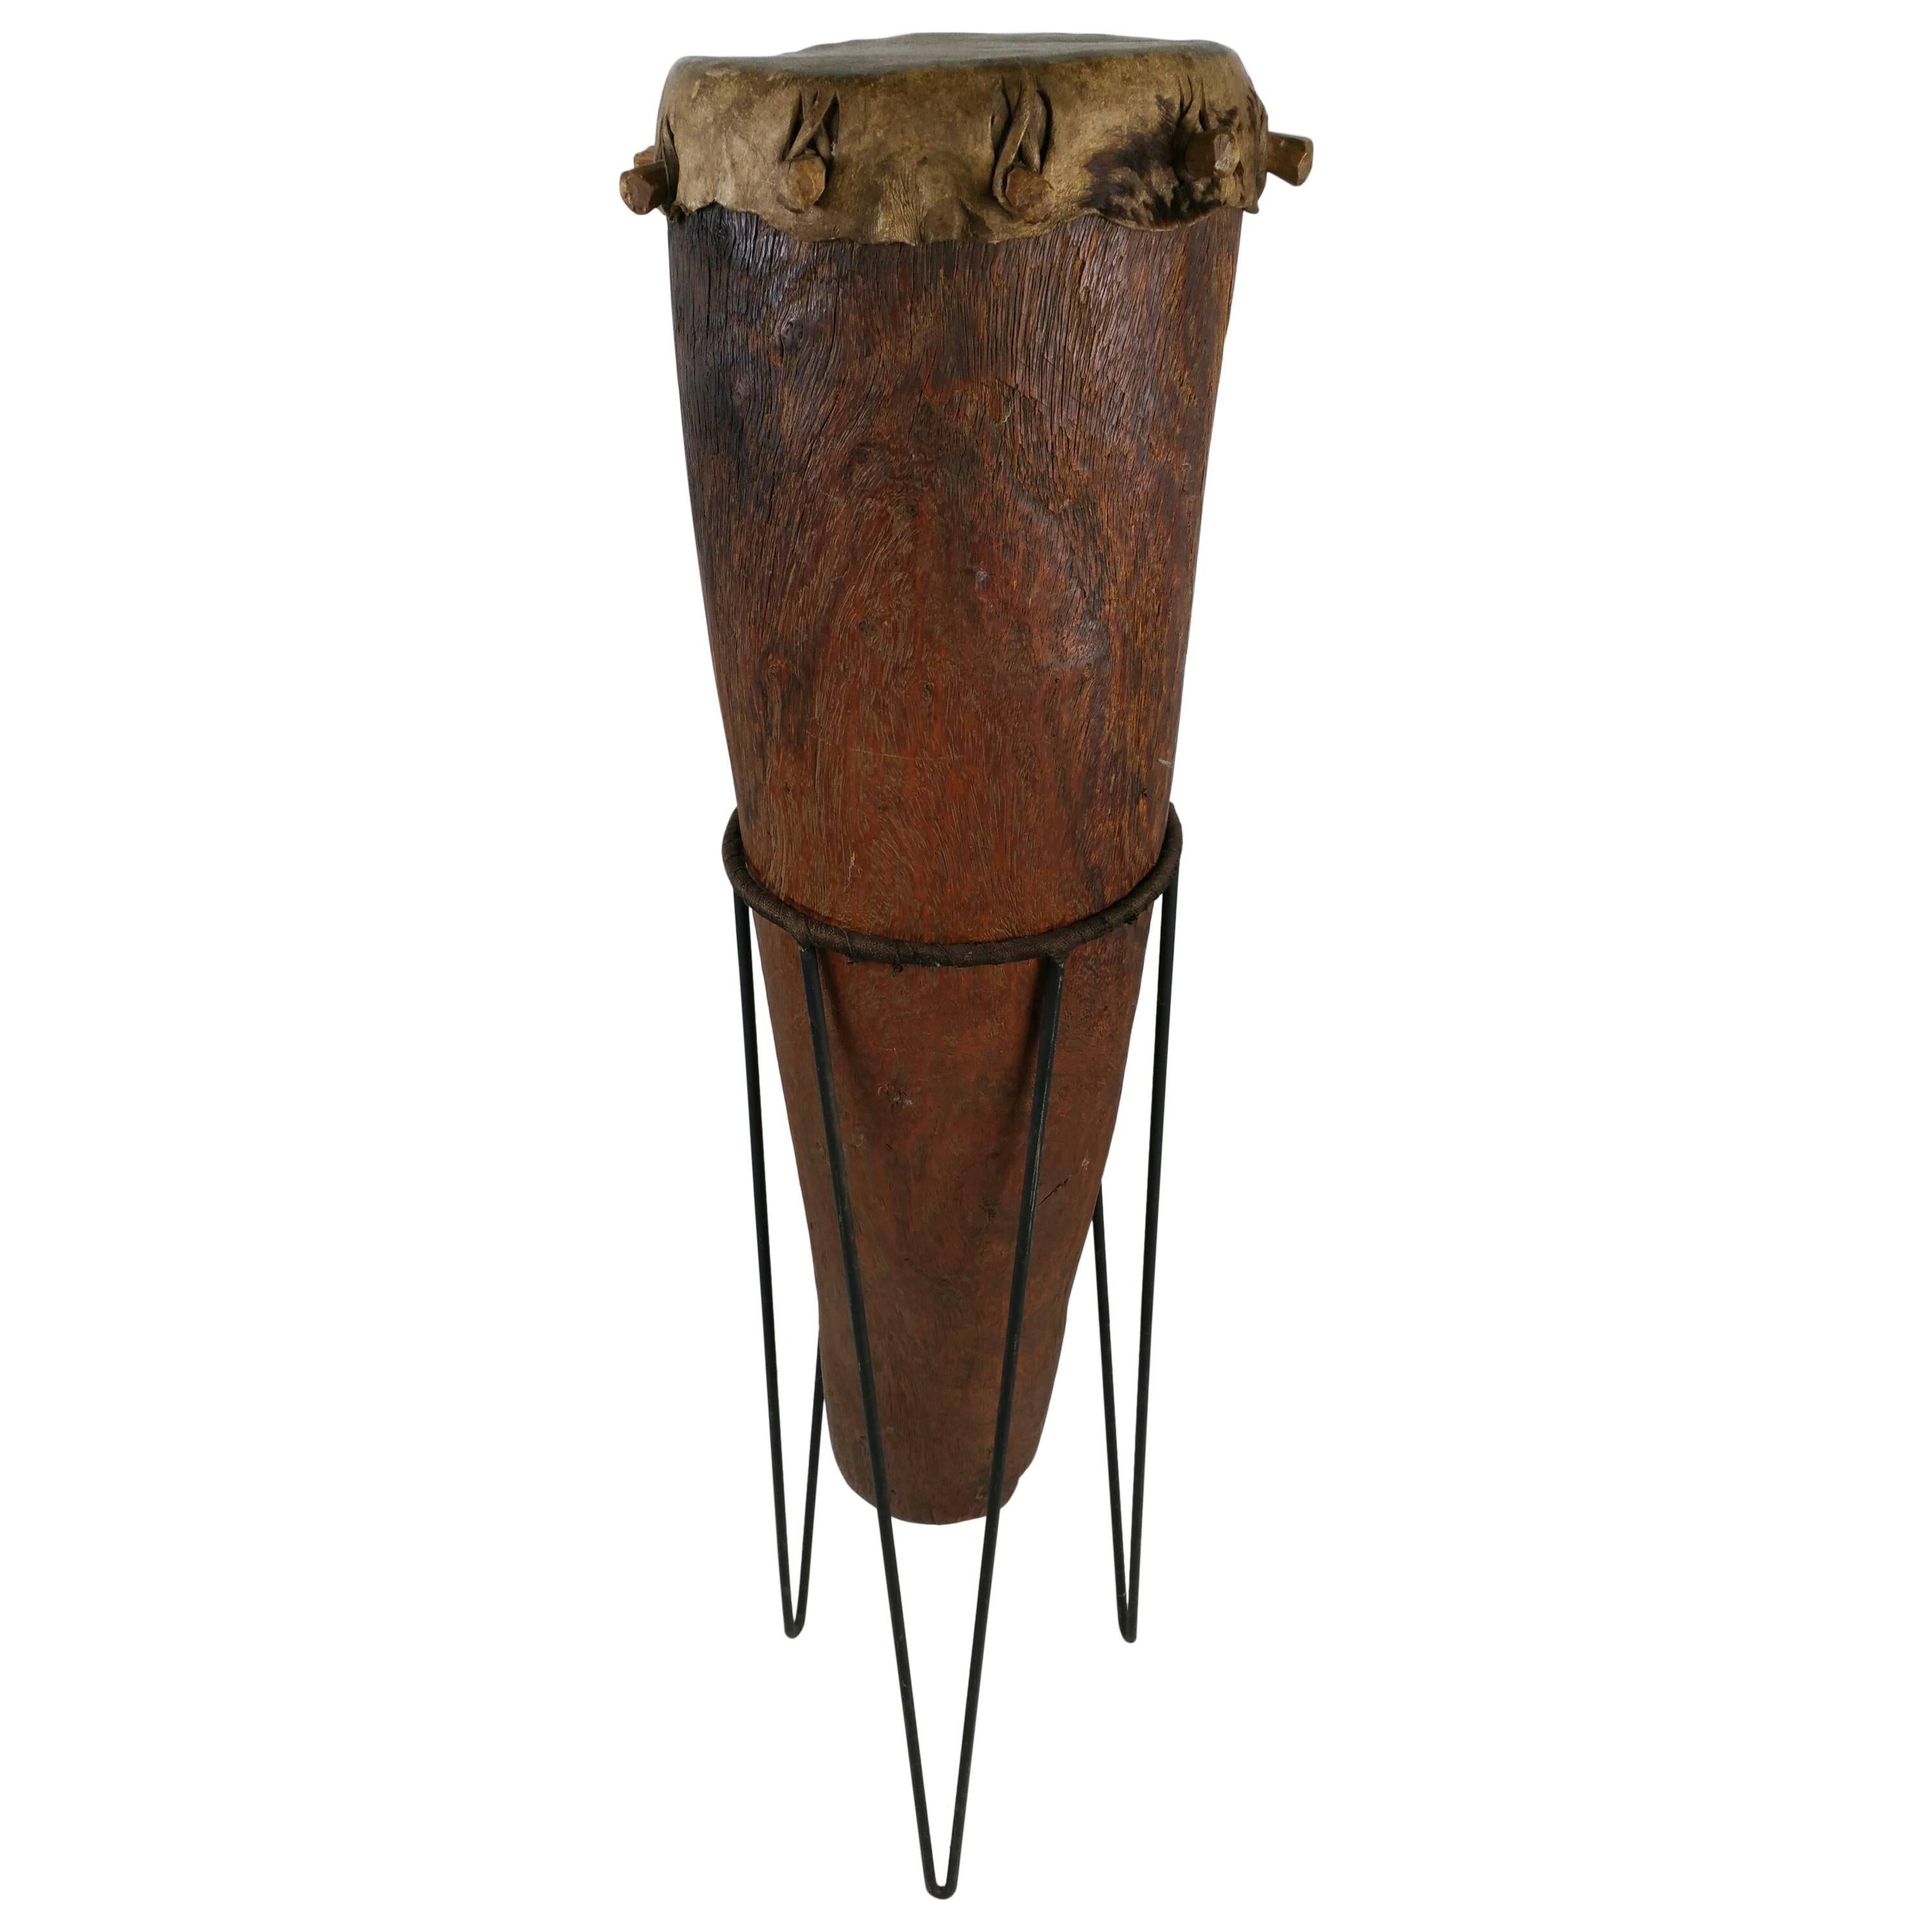 Modernist Sculptural African Drum, Wire Iron Stand